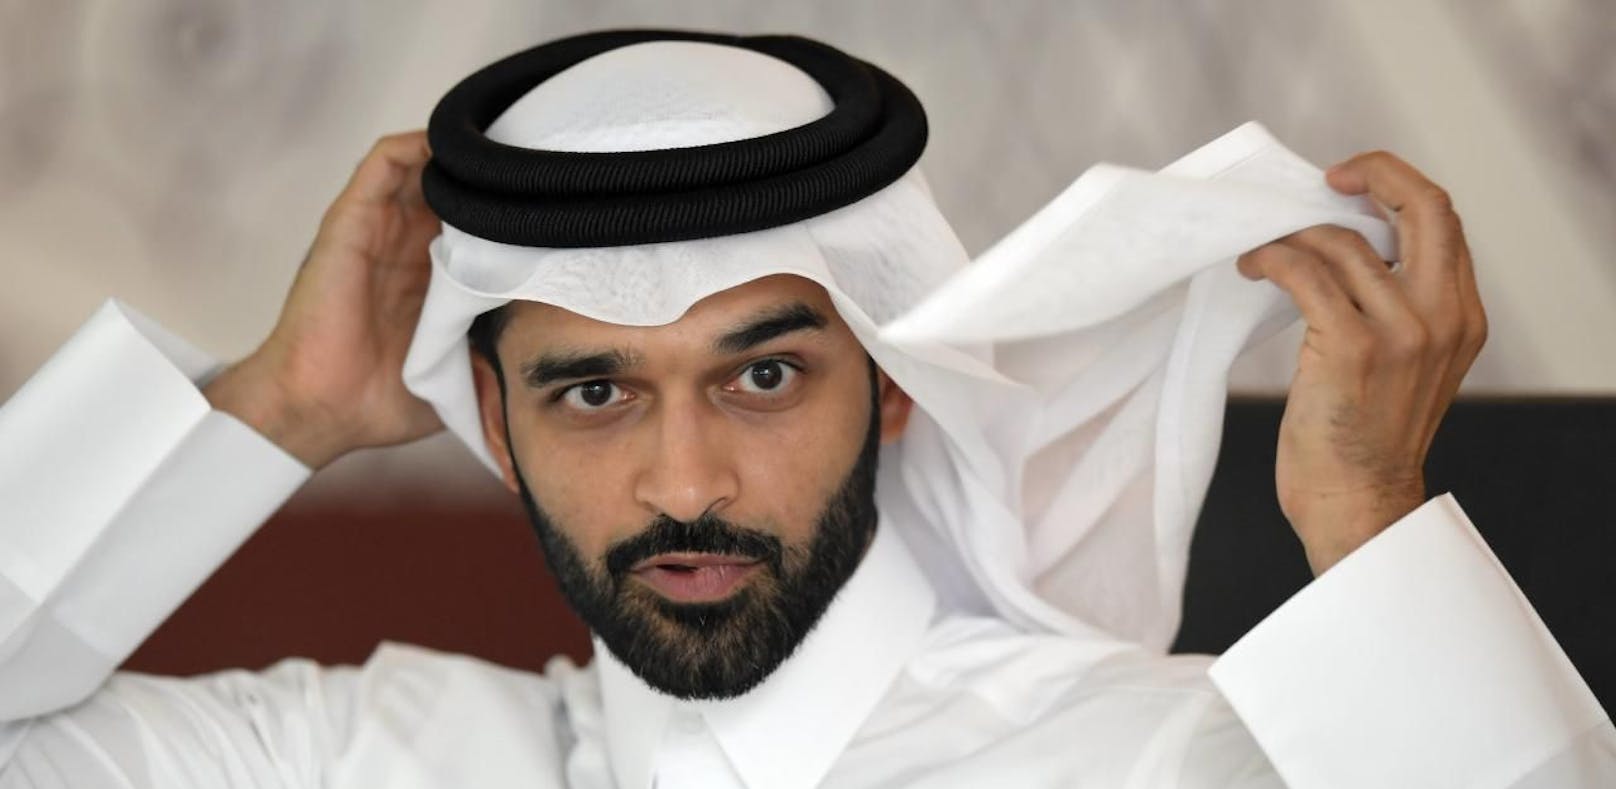 Menschenrechte verletzt? Das sagt Katars WM-Chef